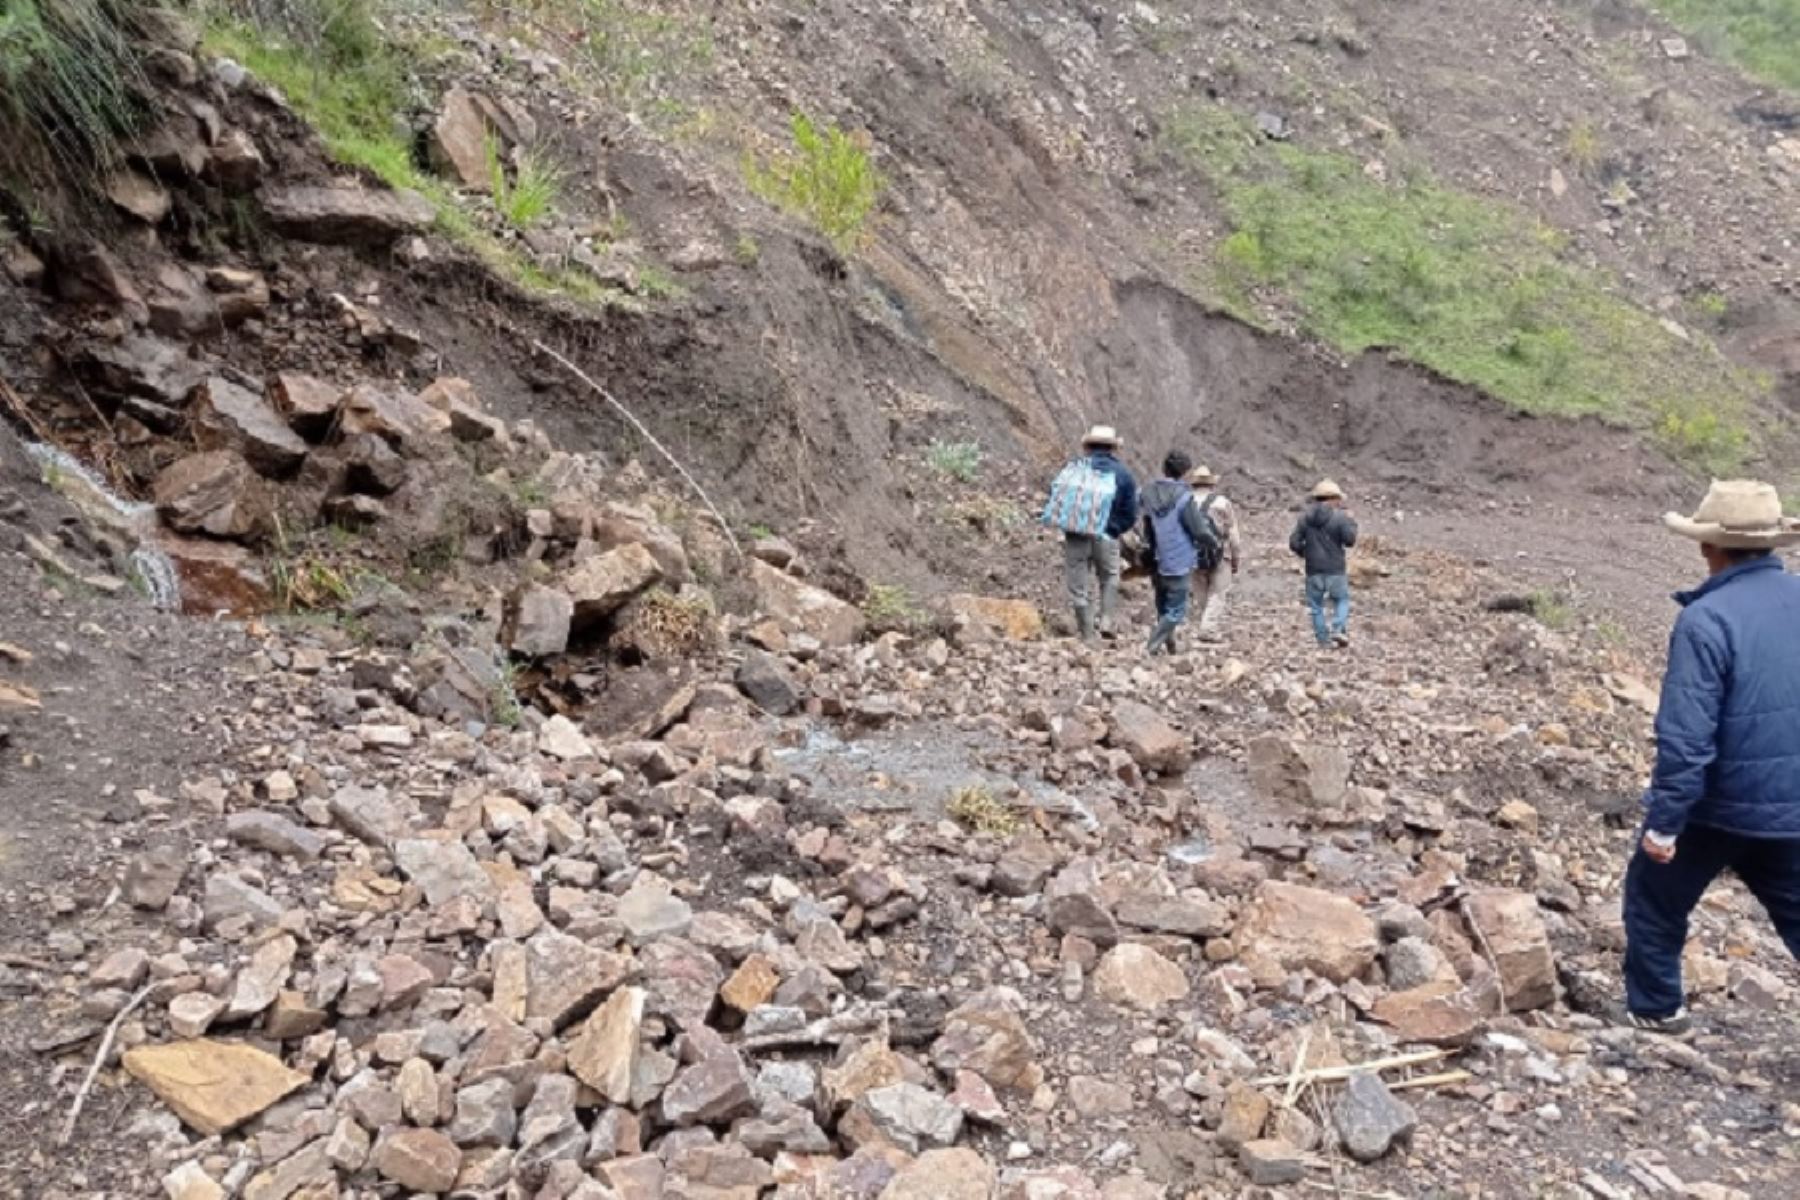 Las lluvias intensas produjeron derrumbes que afectaron parte de una vía vecinal en los sectores de Sucusbamba, Carhuachuna y Rayan del centro poblado de Cajas, distrito de Parobamba, provincia de Pomabamba.